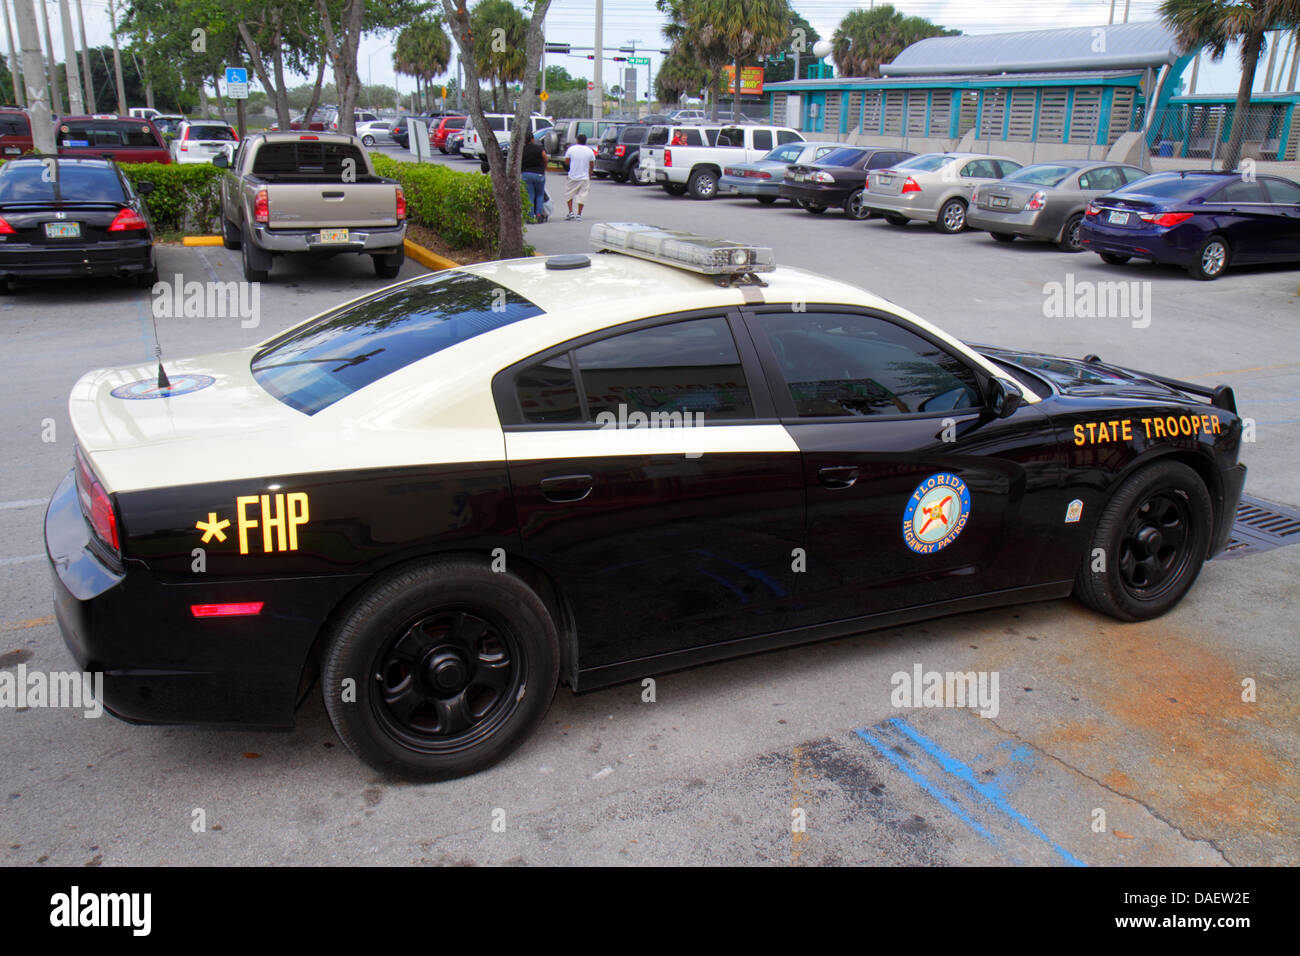 Miami Florida,Homestead,FHP,pattuglia autostradale,stato Trooper,veicolo,auto,FL130518149 Foto Stock